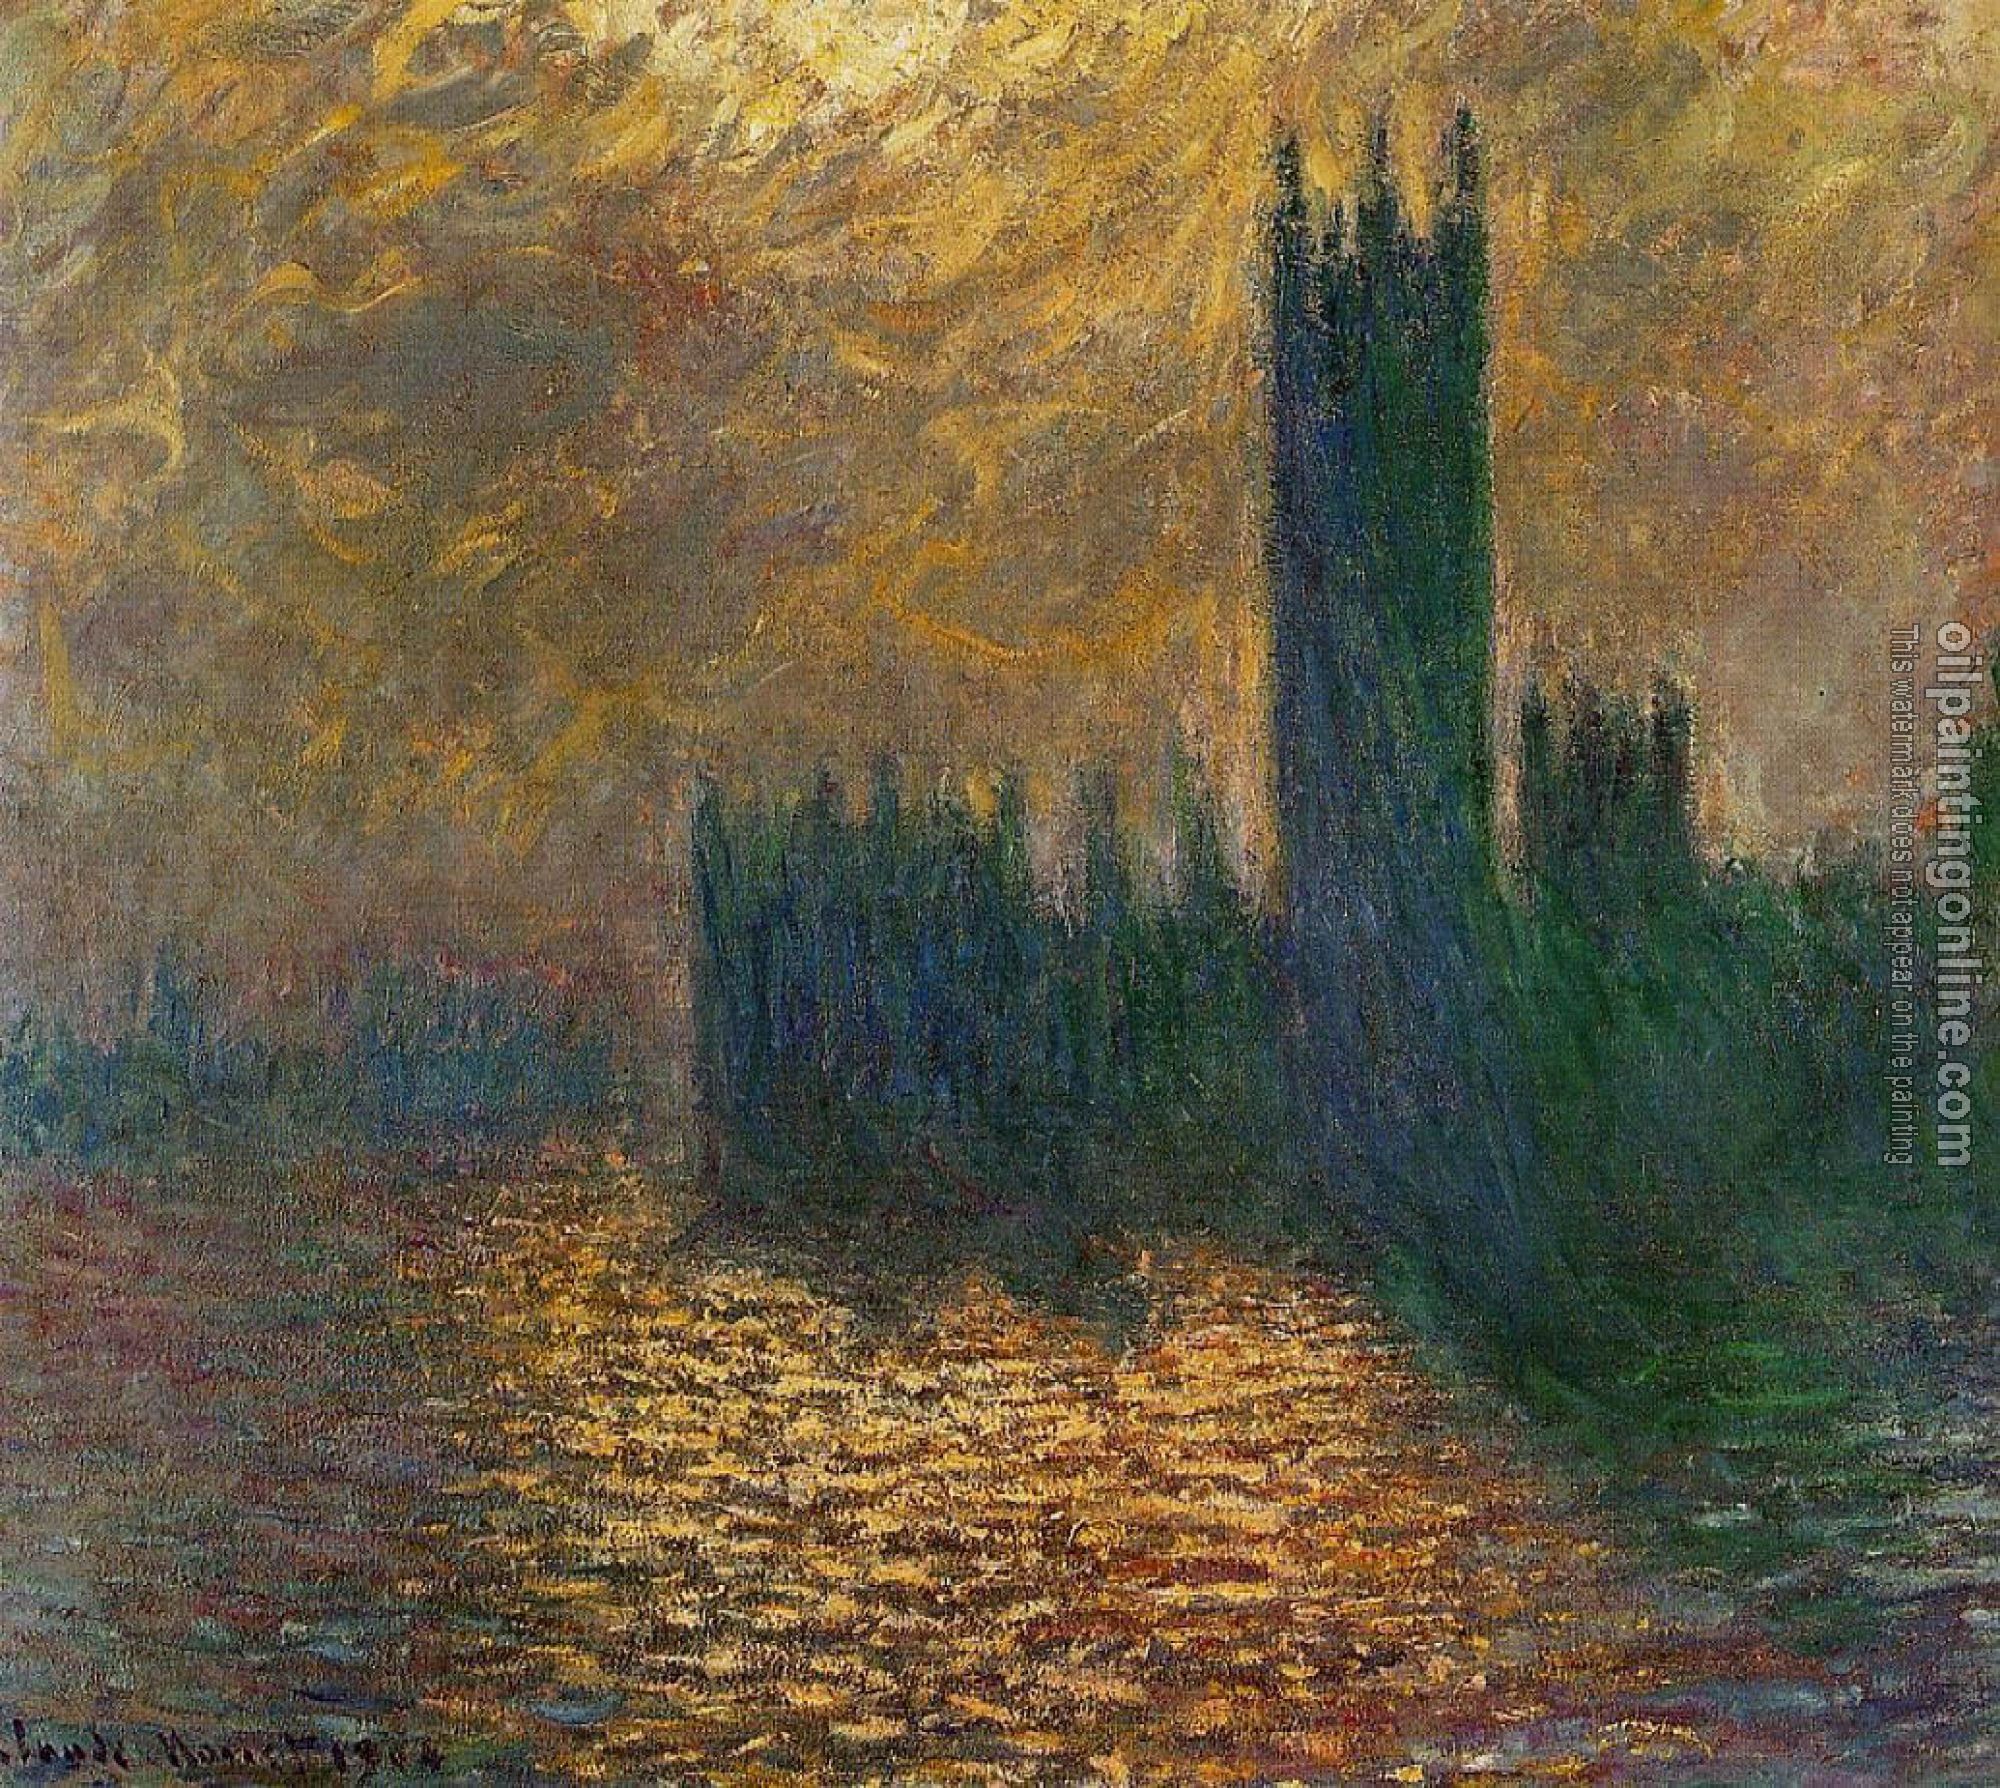 Monet, Claude Oscar - Houses of Parliament, Stormy Sky